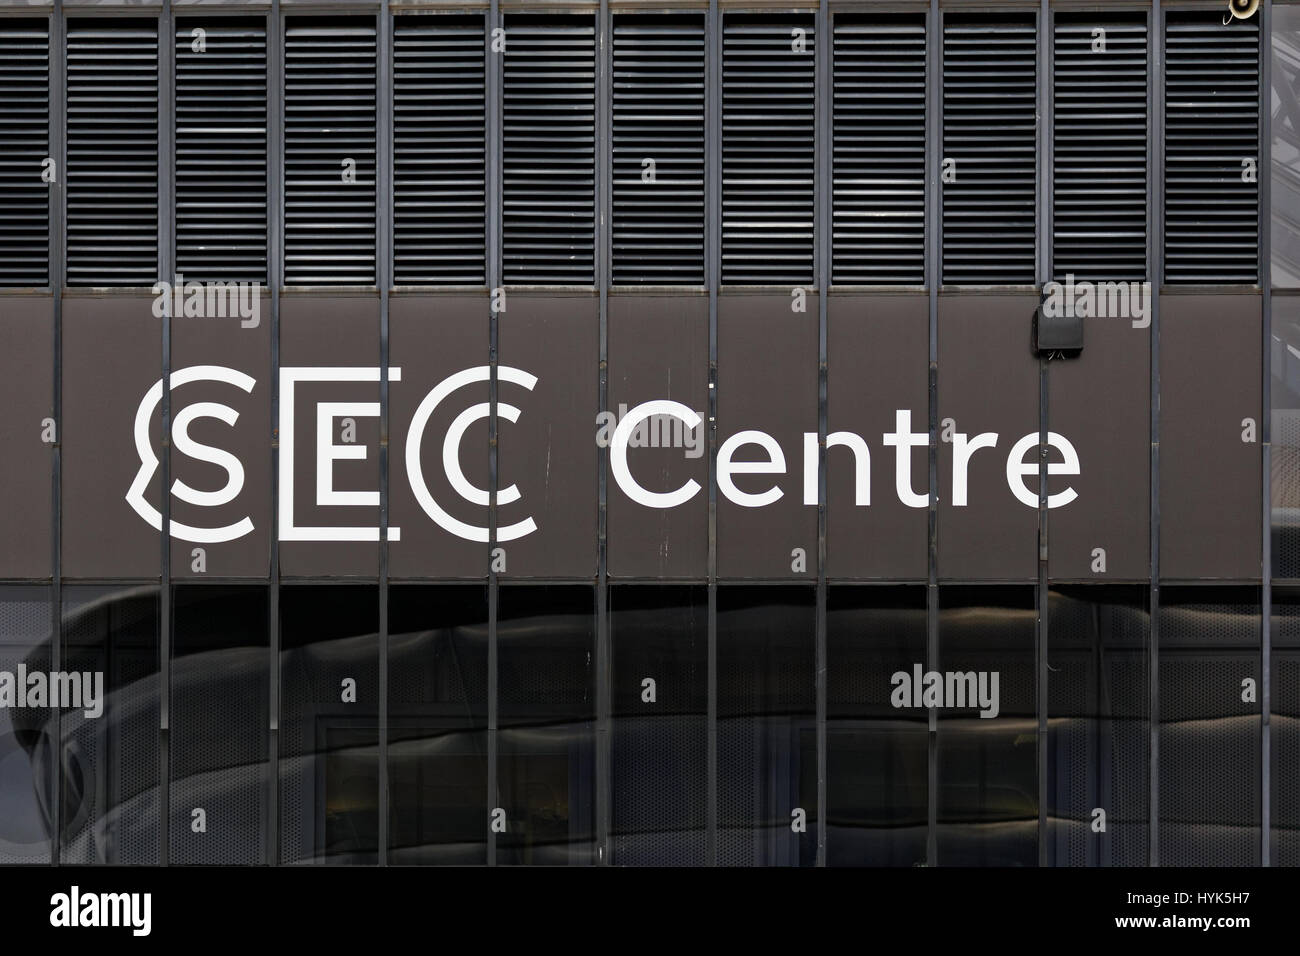 sec centre sign on building secc Stock Photo